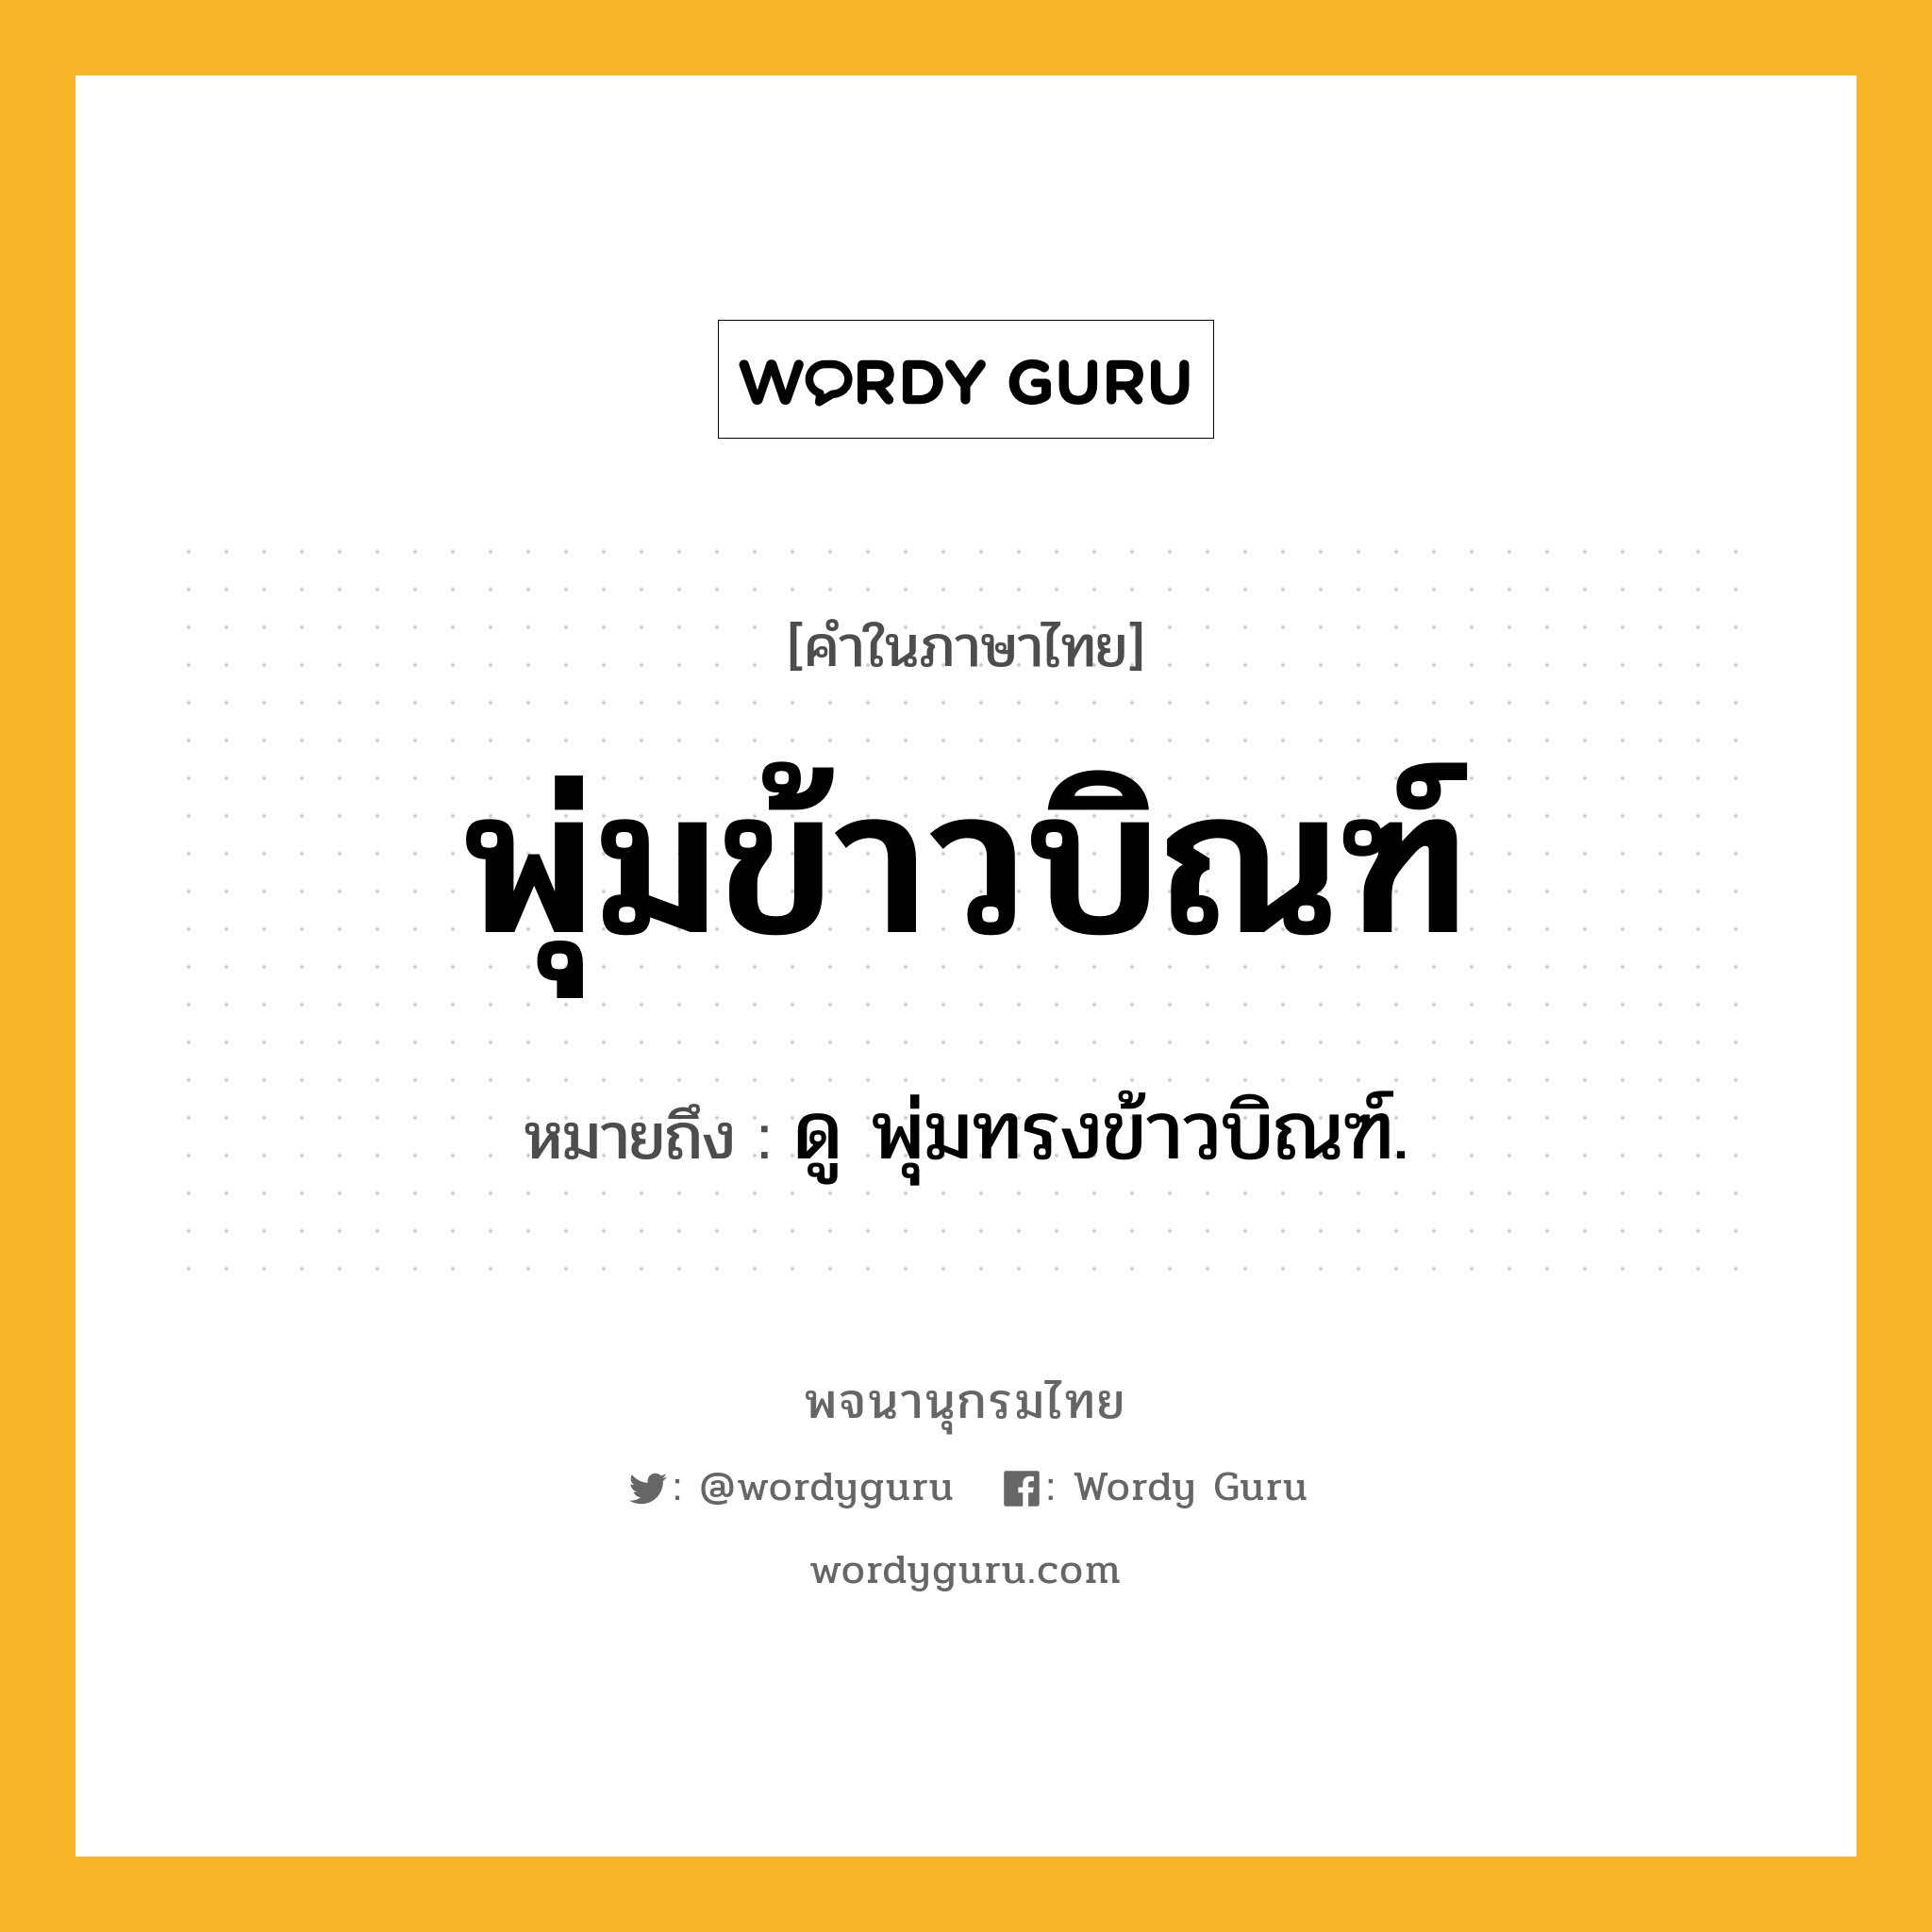 พุ่มข้าวบิณฑ์ ความหมาย หมายถึงอะไร?, คำในภาษาไทย พุ่มข้าวบิณฑ์ หมายถึง ดู พุ่มทรงข้าวบิณฑ์.